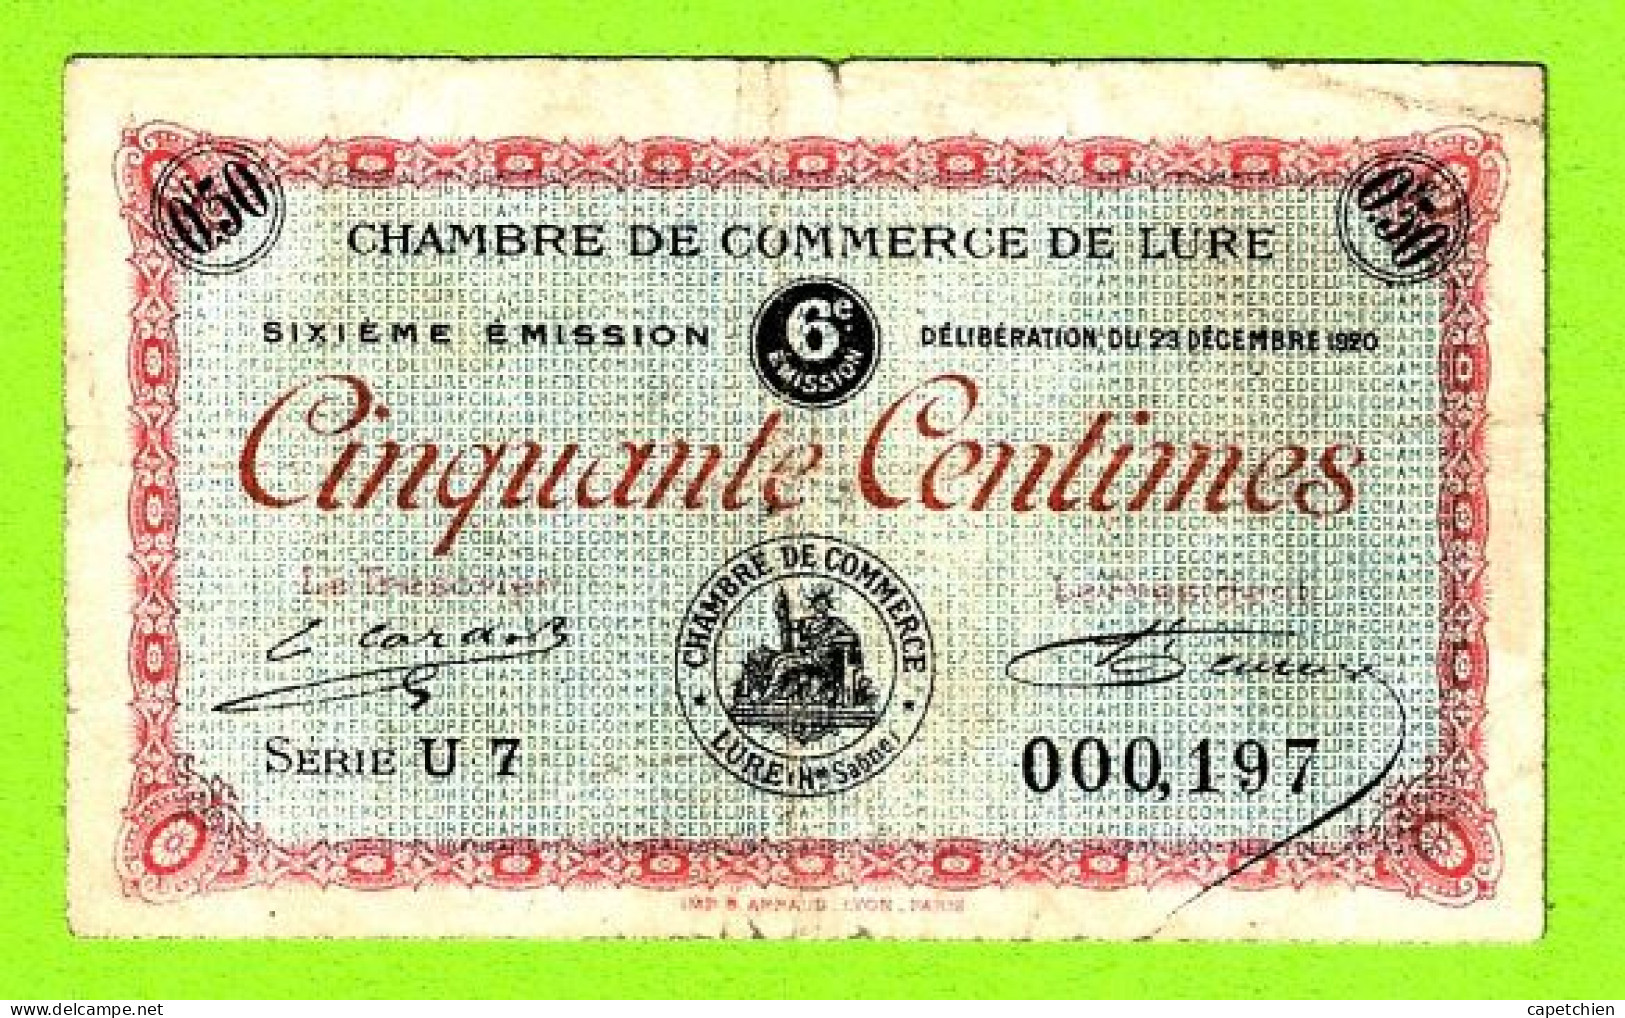 FRANCE / LURE / 50 CENTIMES / 29 DECEMBRE 1920 / N° 000197 / SERIE U7 / 6eme EMISSION - Chambre De Commerce